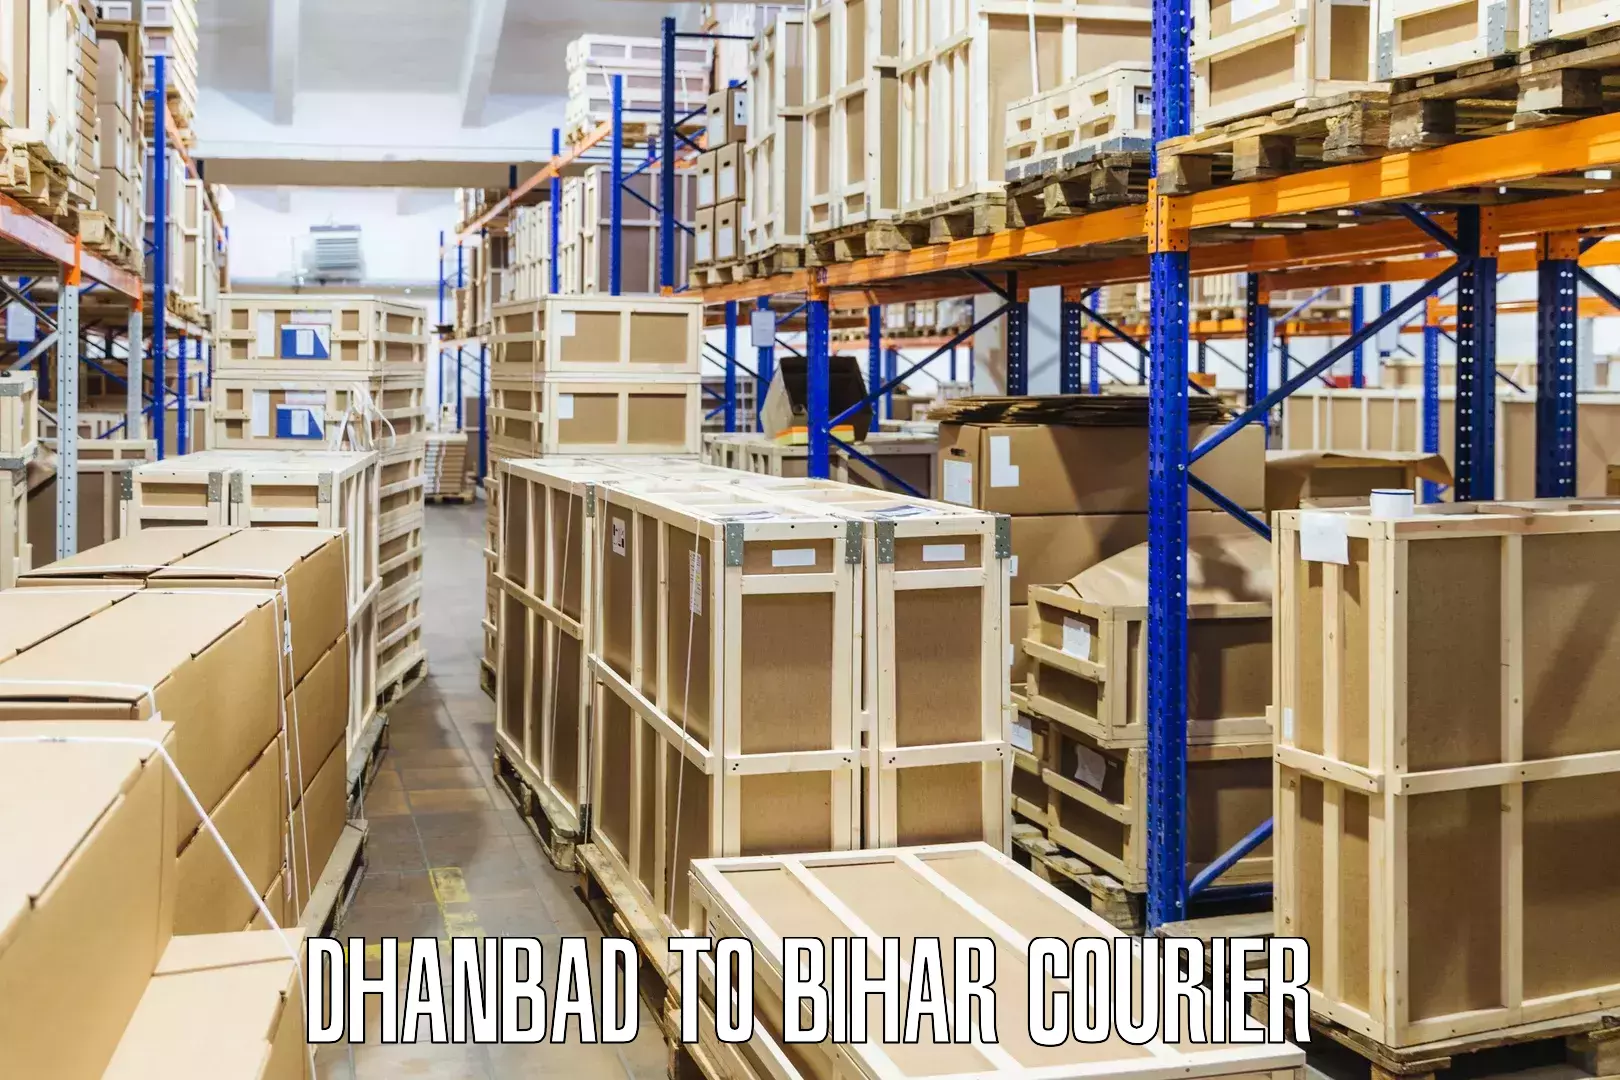 Digital courier platforms Dhanbad to Saraiya